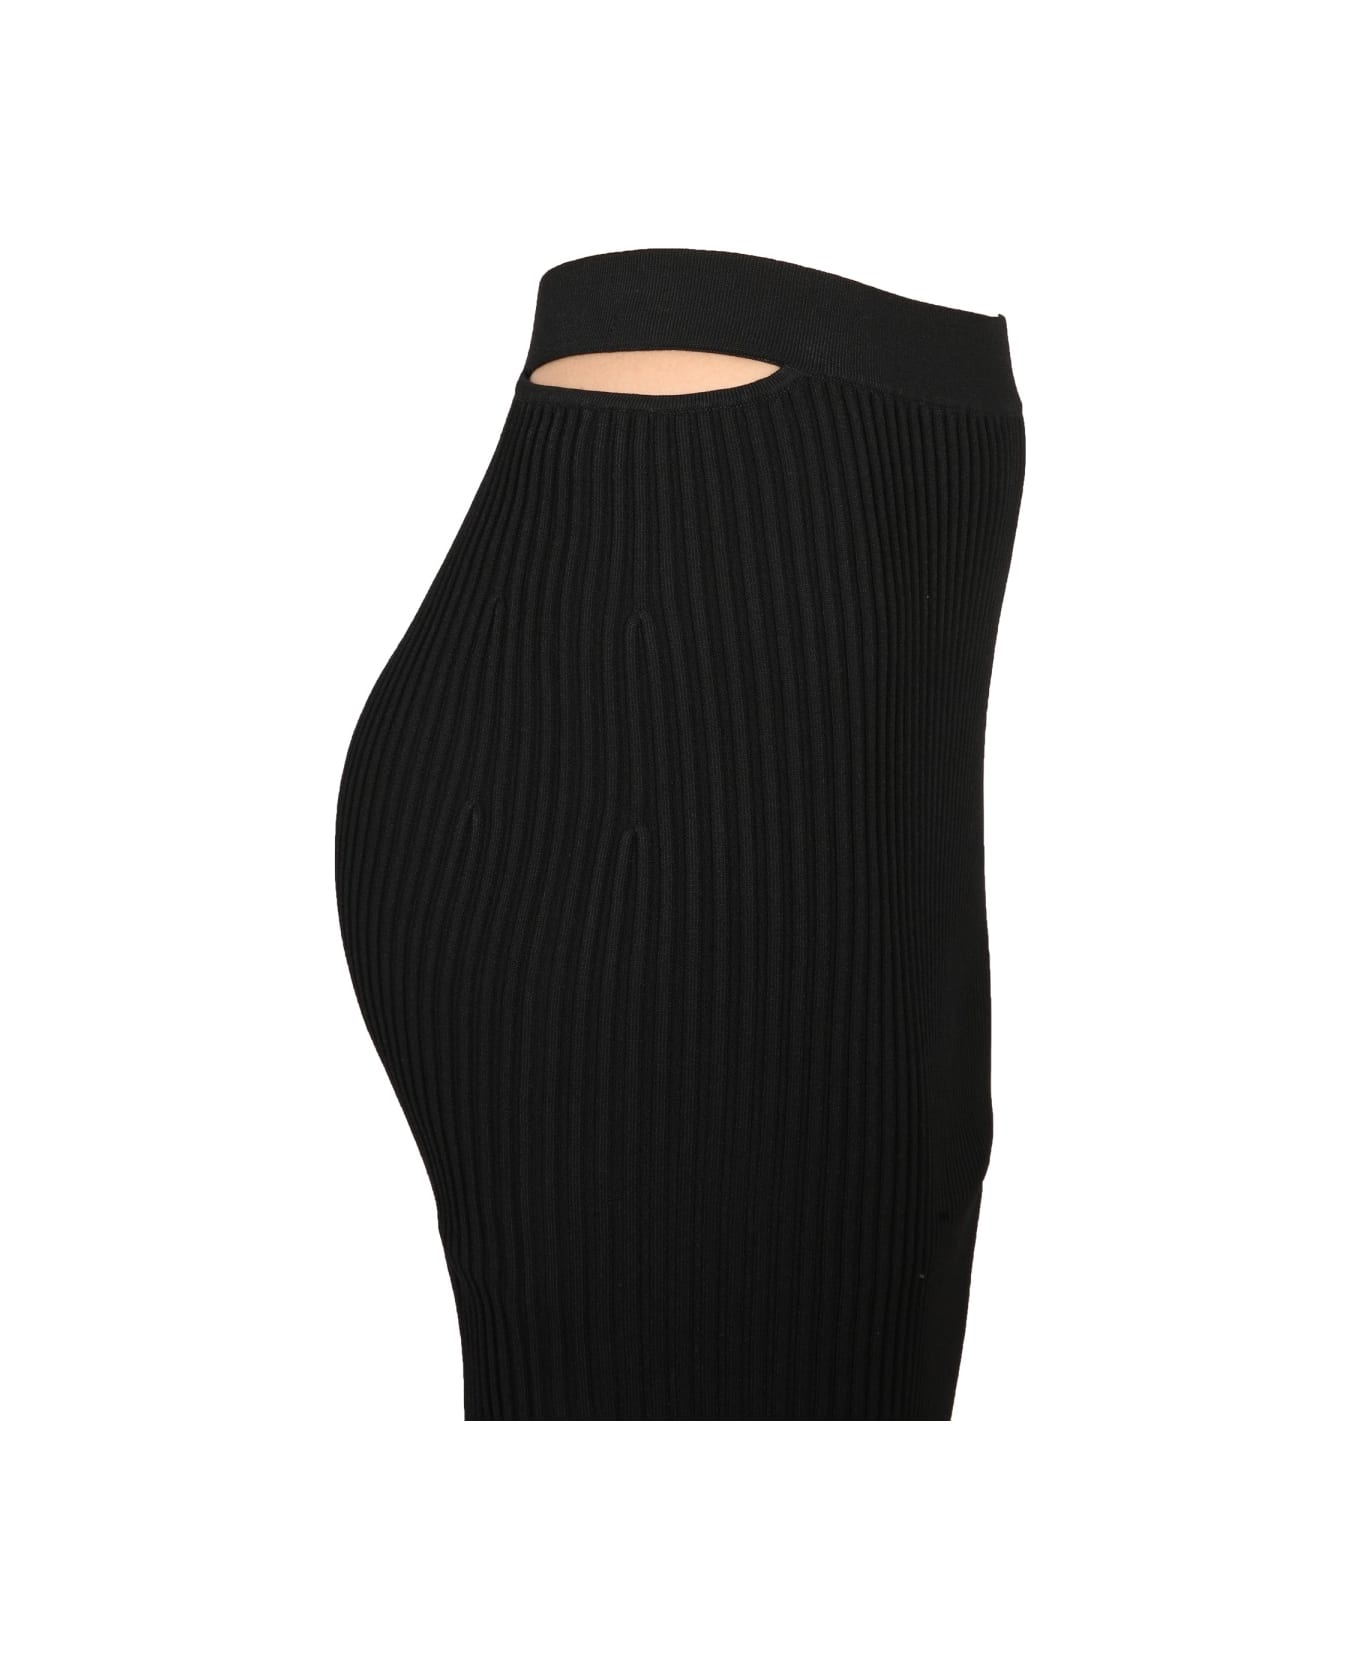 Helmut Lang One-shoulder Dress - BLACK